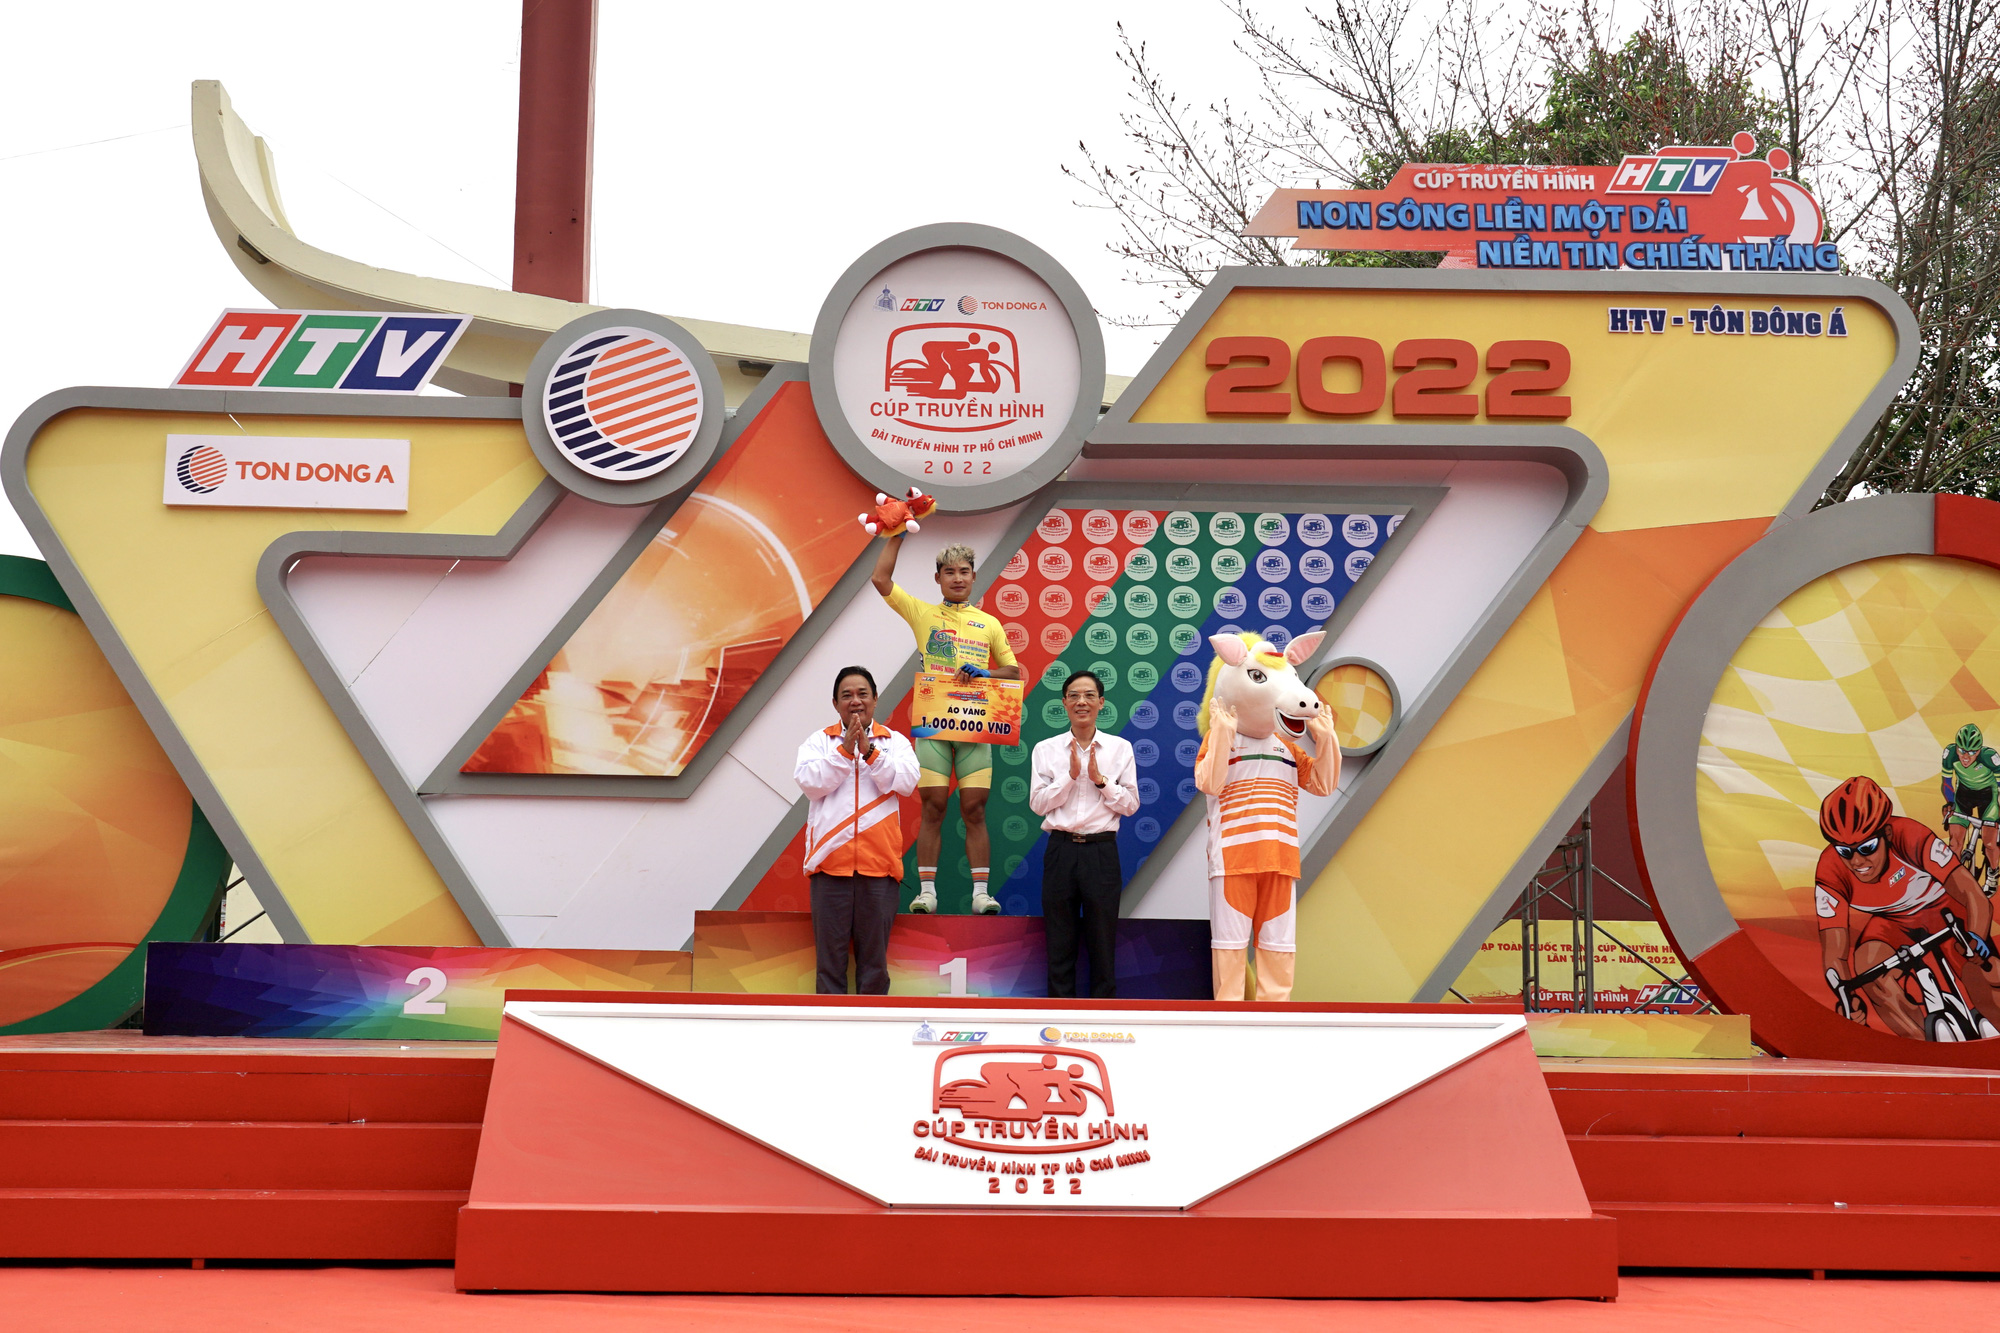 Cúp Truyền hình TP HCM 2022: Trần Tuấn Kiệt khoe tên người yêu khi thắng chặng - Ảnh 5.